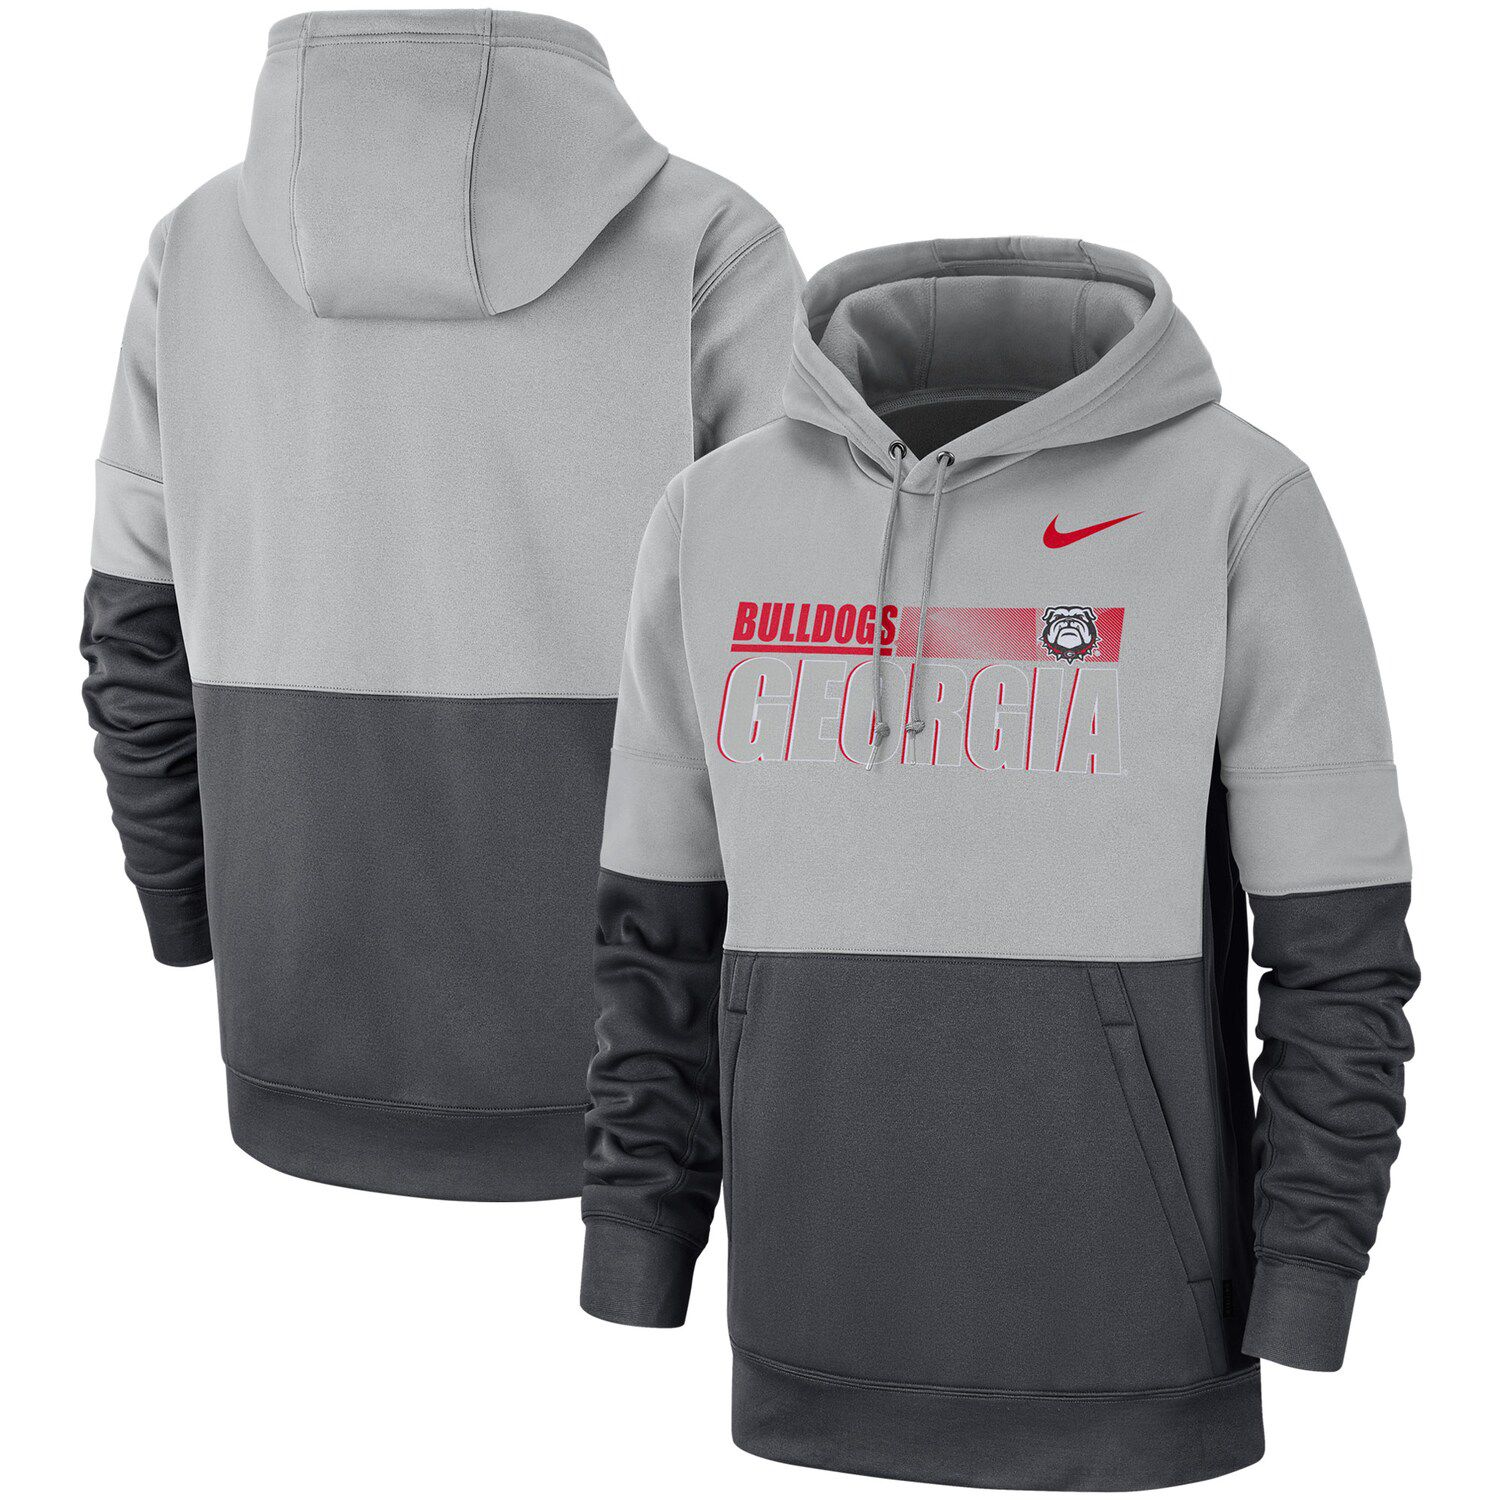 Men's Nike Gray/Anthracite Georgia 